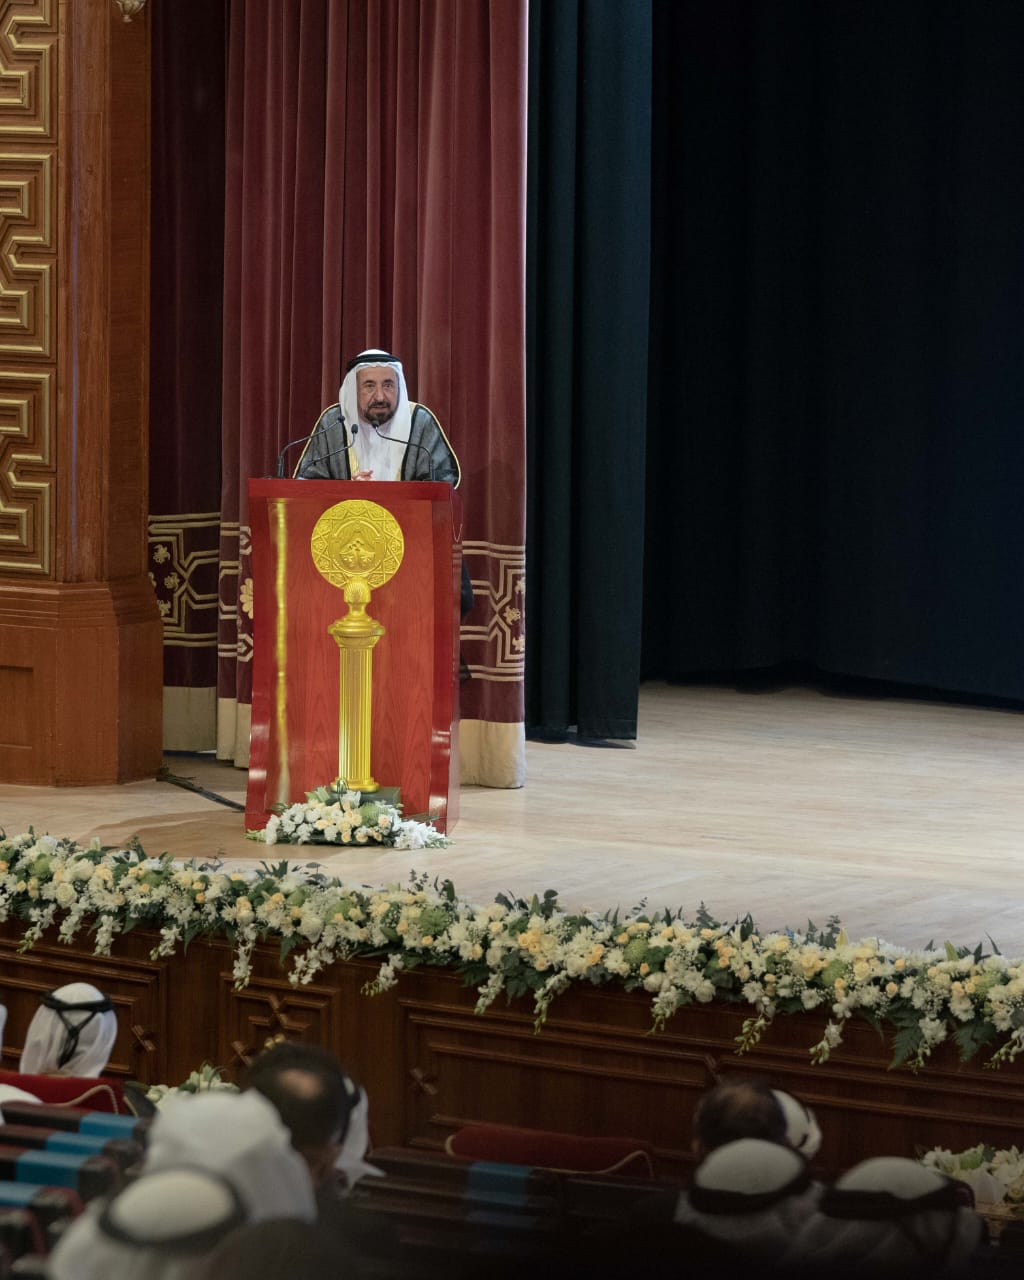 سلطان بن محمد القاسمي  عاد المسرح وعادت شجرة الثقافة  كأداةً راسخة لحماية المجتمعات وتحقيق الطمأنينة (7)